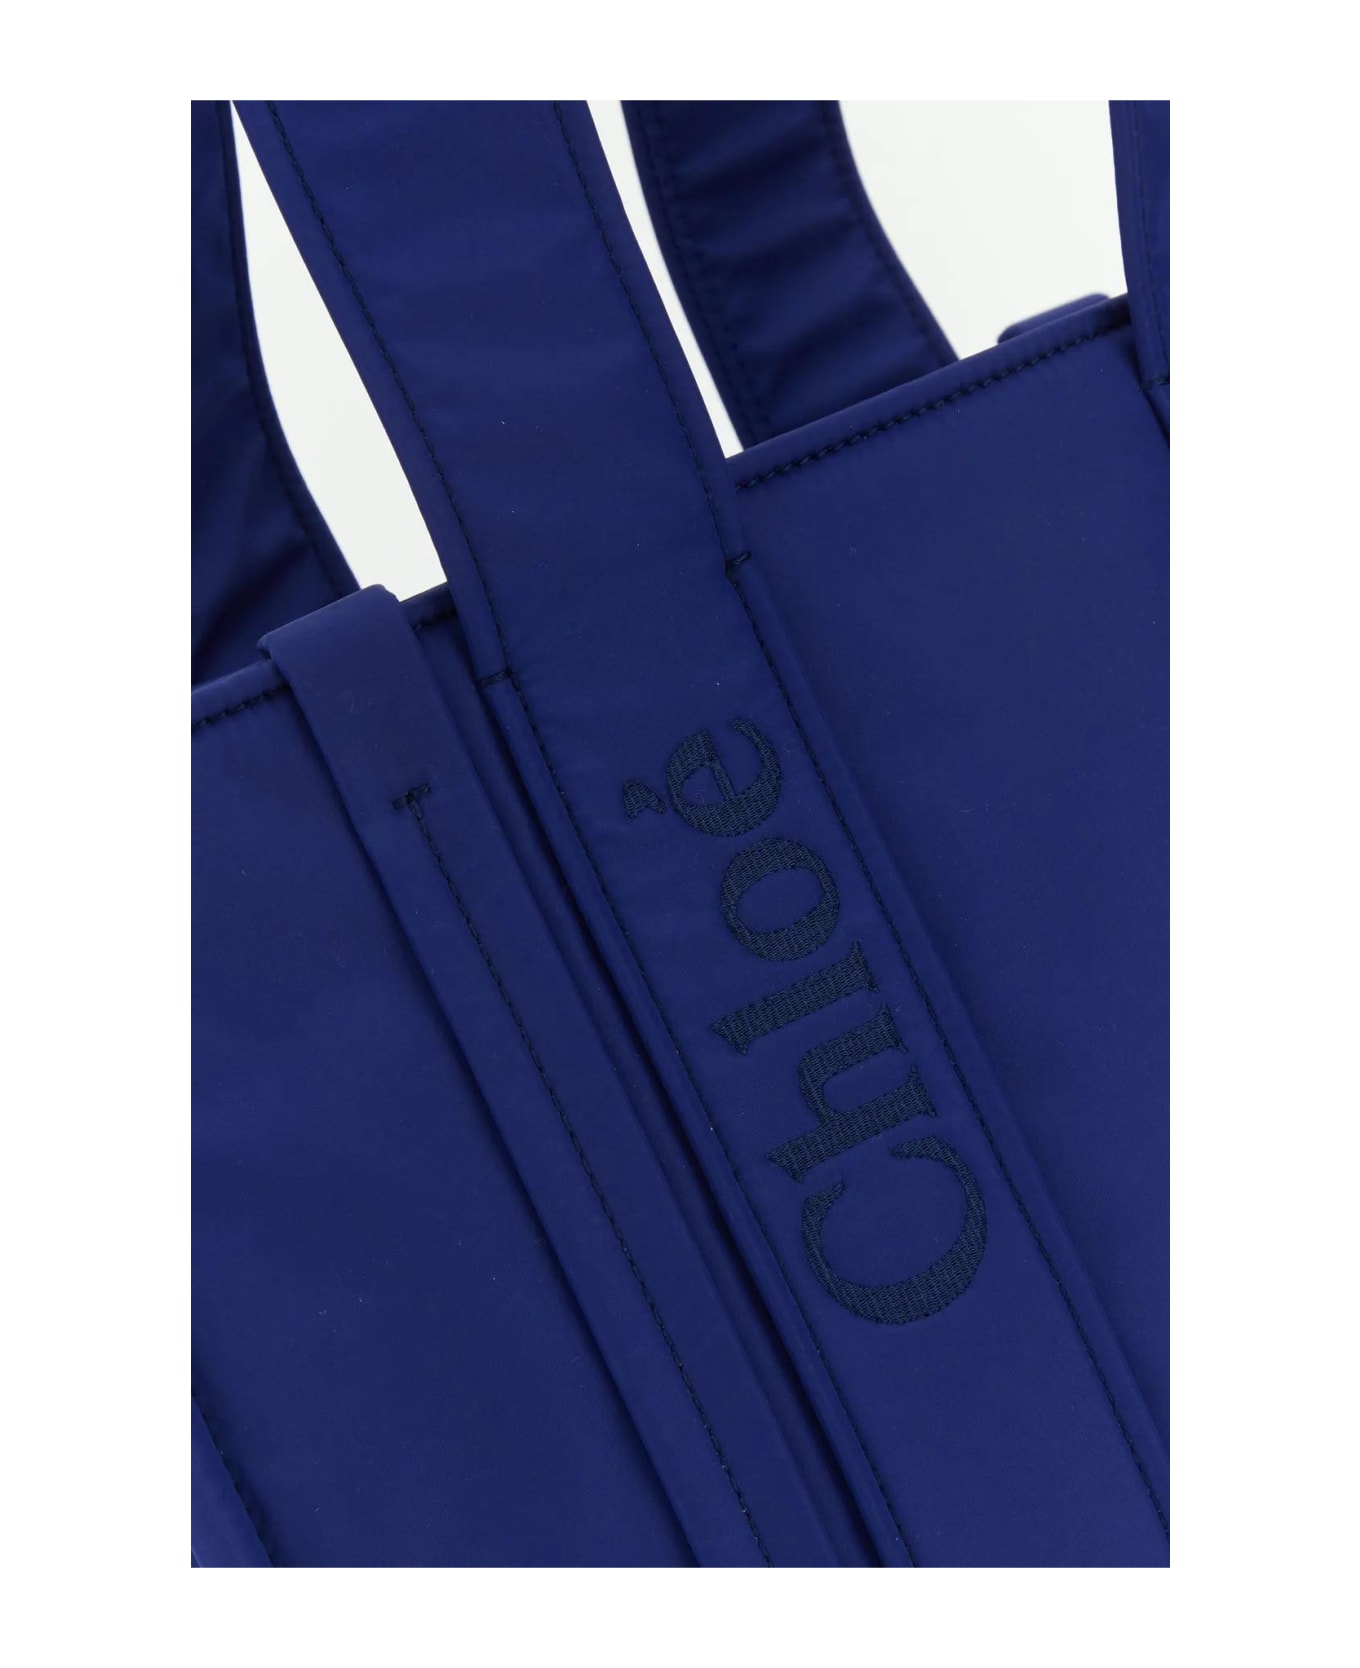 Chloé Electric Blue Nylon Medium Woody Shopping Bag - Blue